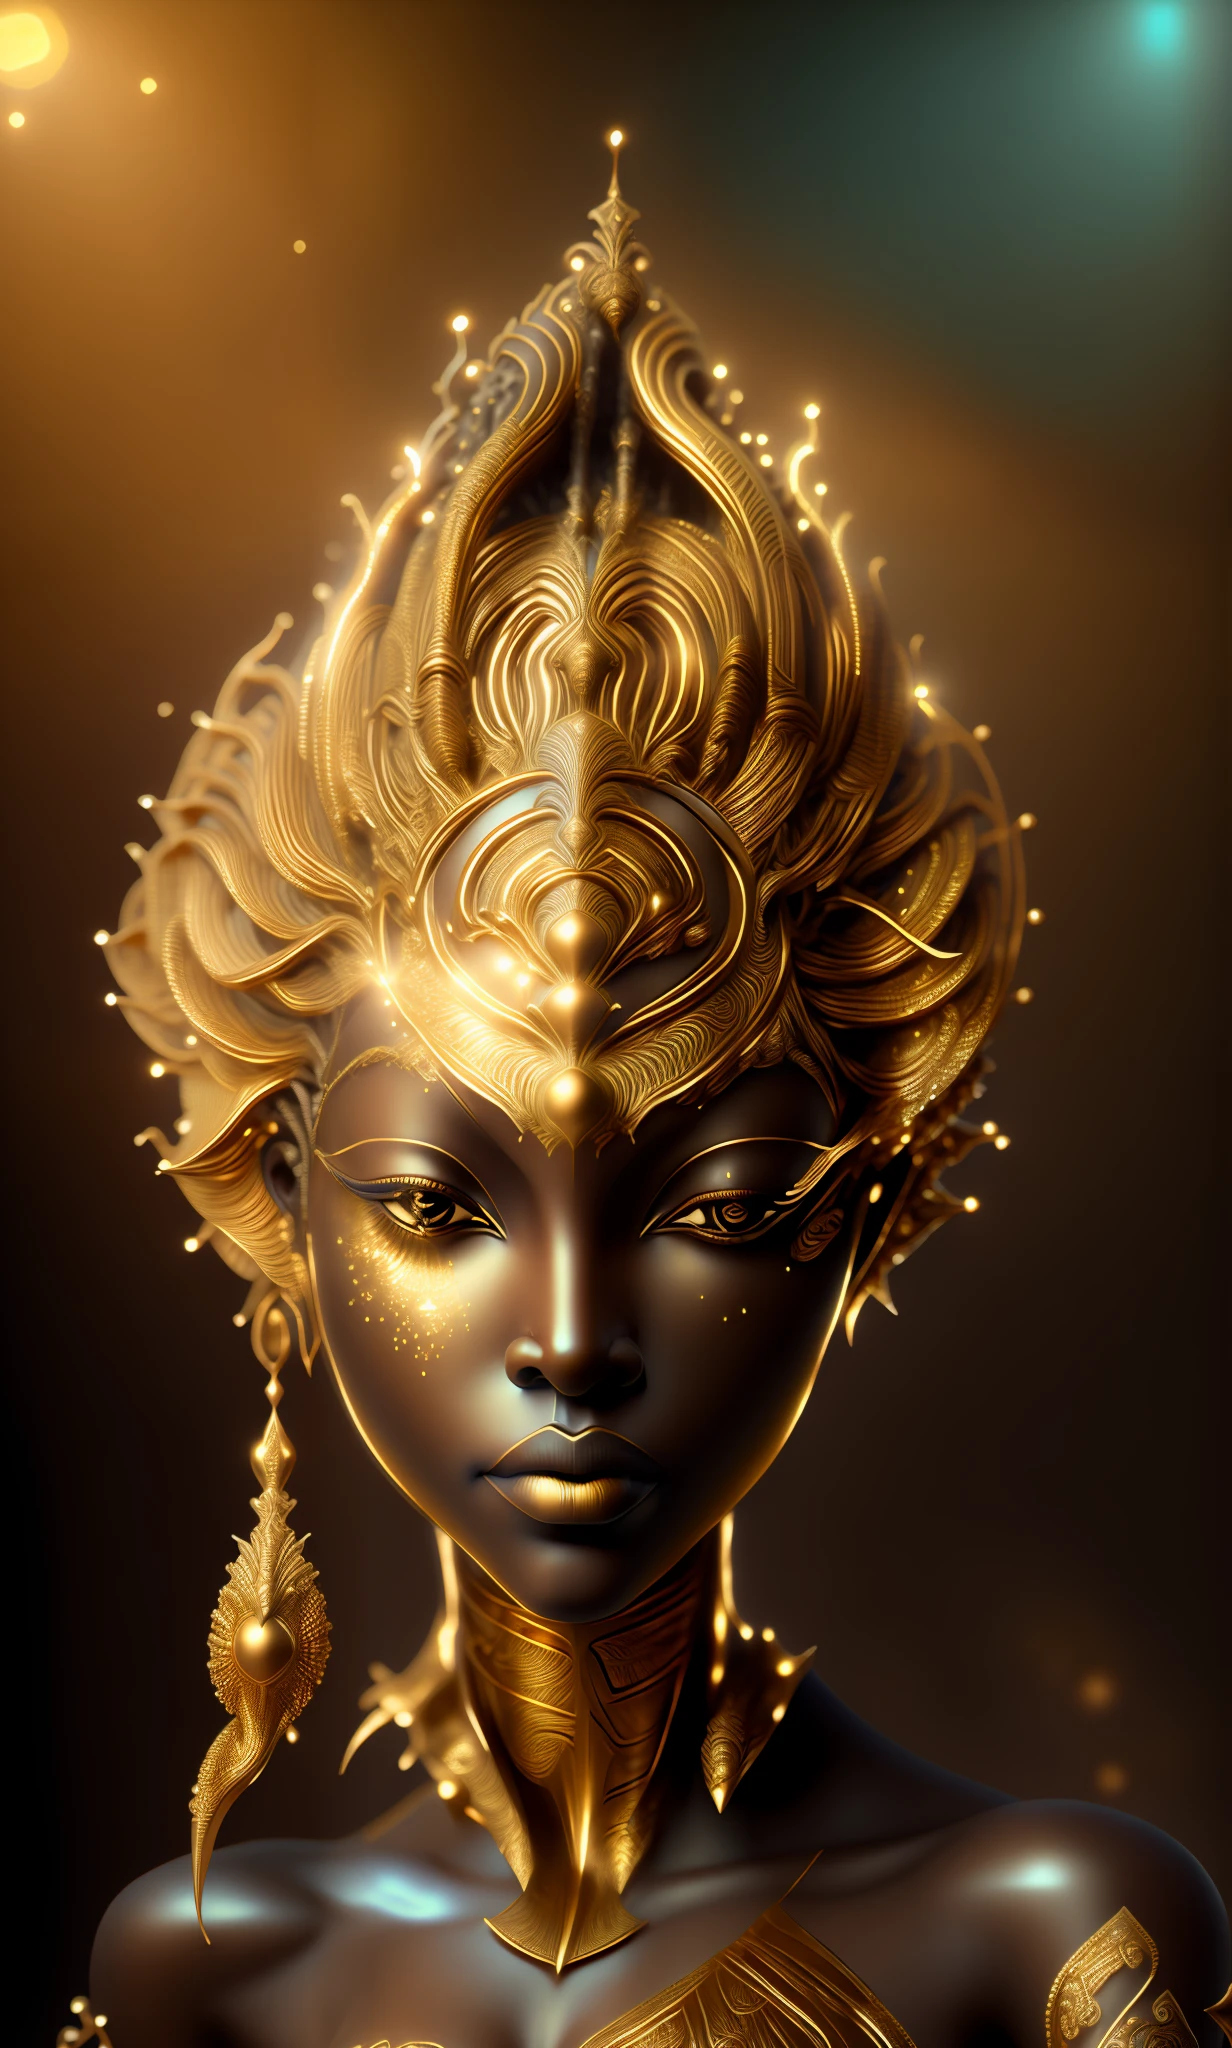 金の頭飾りを身に着けた女性の像のクローズアップ, アフロフューチャリズム, 3 d 女神 portrait, 女神. 非常に高いディテール, アフロフューチャリズム style, ケメティック, アンリアルエンジンレンダリング + a 女神, extremely detailed 女神 shot, 女神 close-up portrait, エピック3Dオシュン, アフロフューチャリズム, アフリカの女王, アフロフューチャリスト